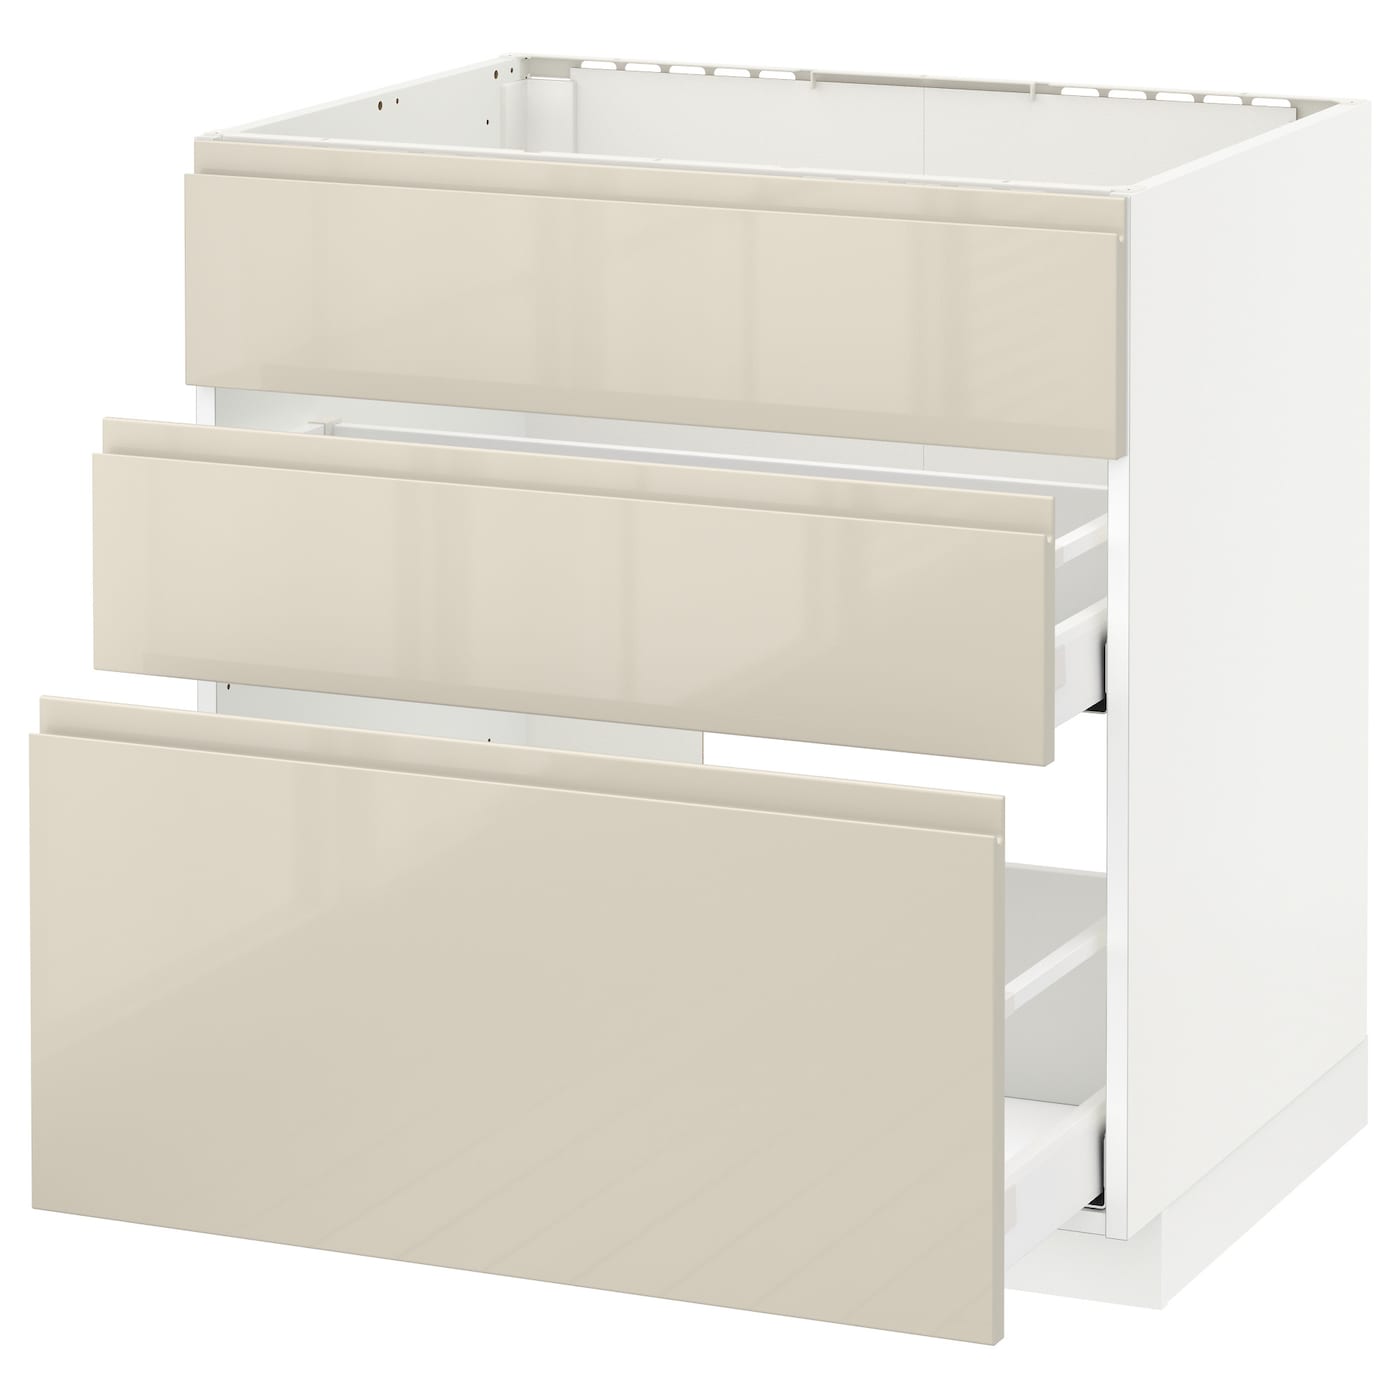 Напольный кухонный шкаф  - IKEA METOD MAXIMERA, 88x62x80см, белый/бежевый, МЕТОД МАКСИМЕРА ИКЕА